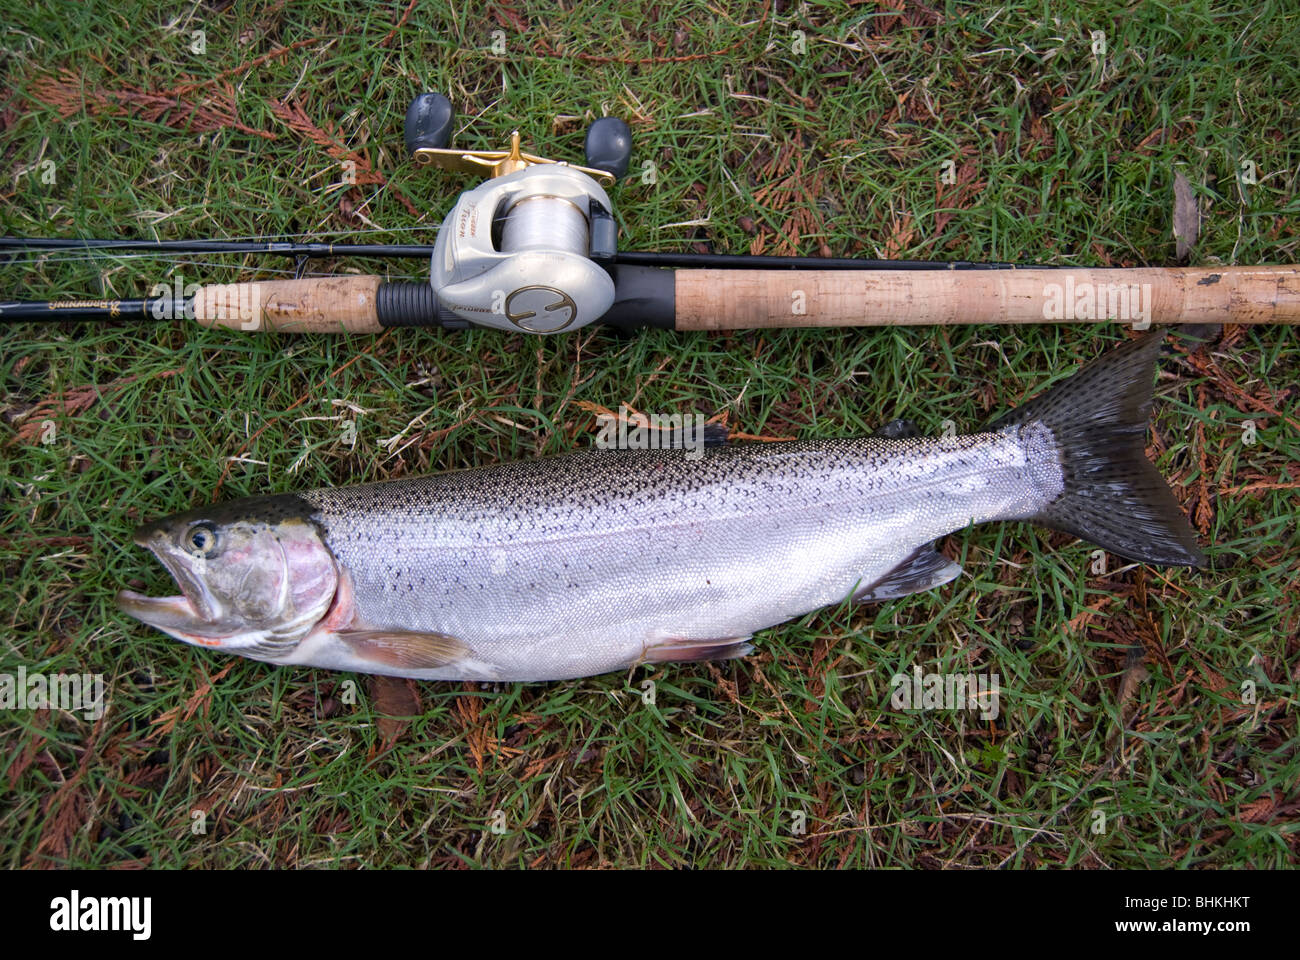 Fishing Washington Stock Photos - 4,212 Images